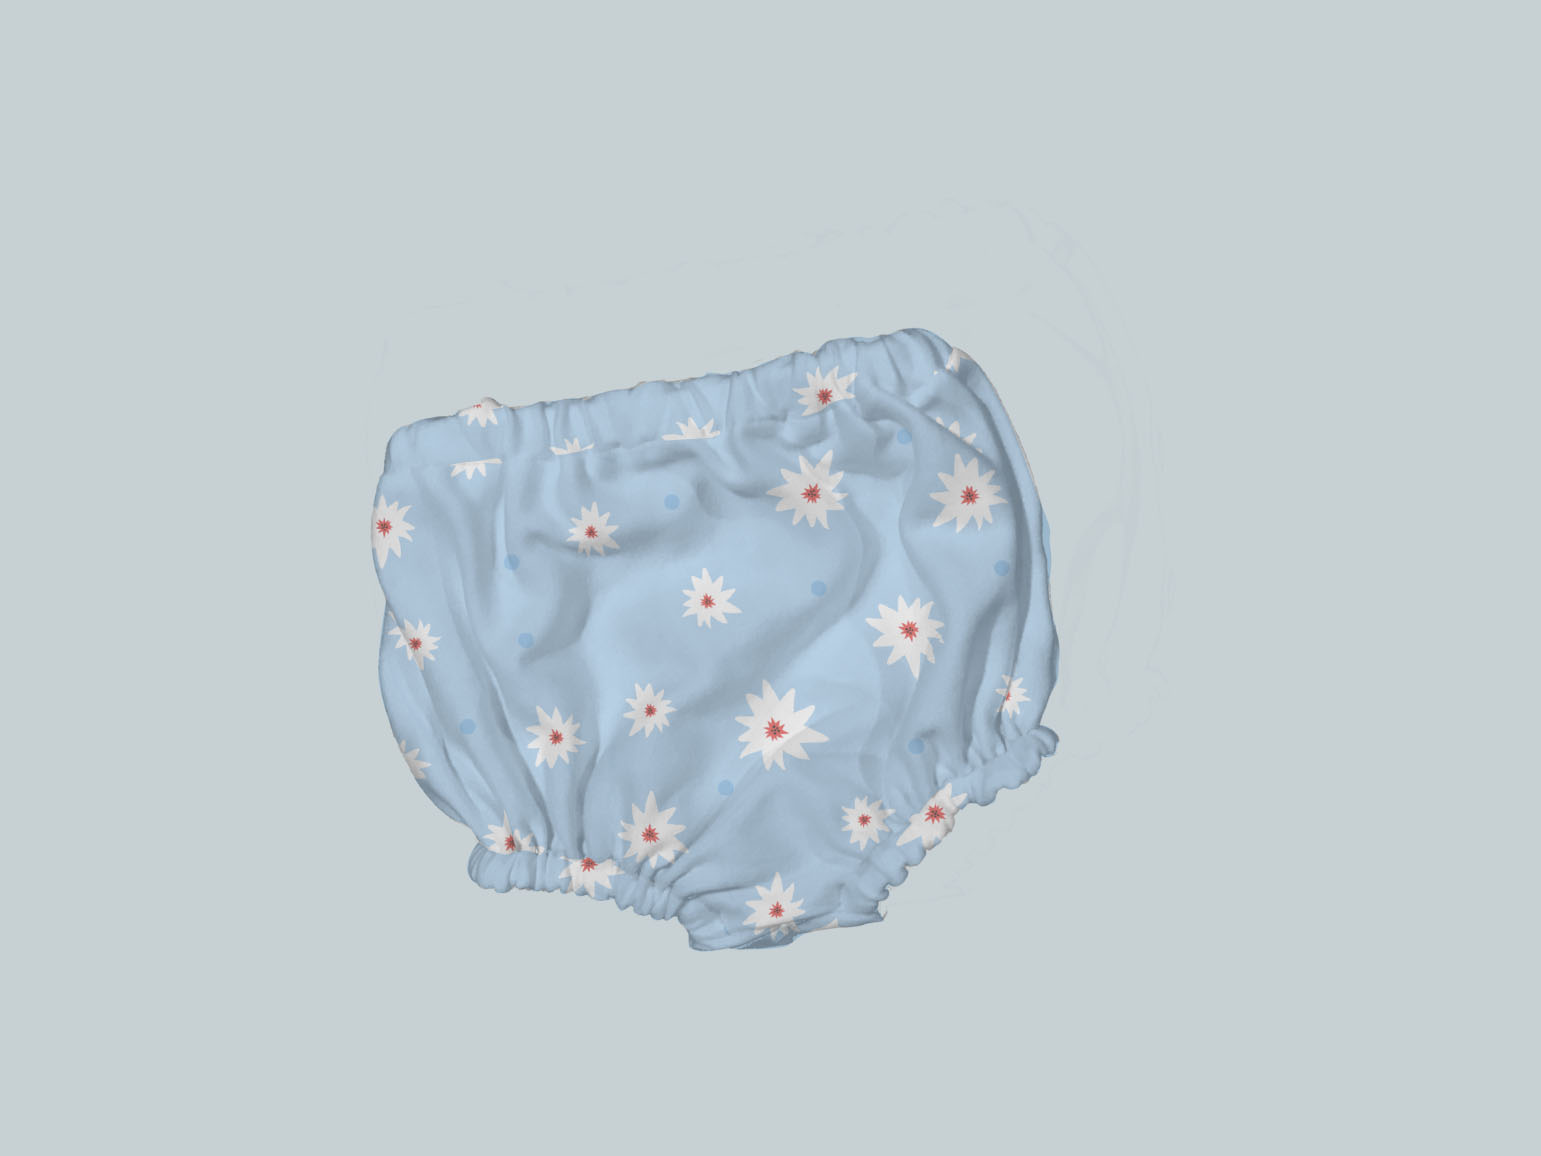 Bummies/Diaper Cover - Blue Daisies